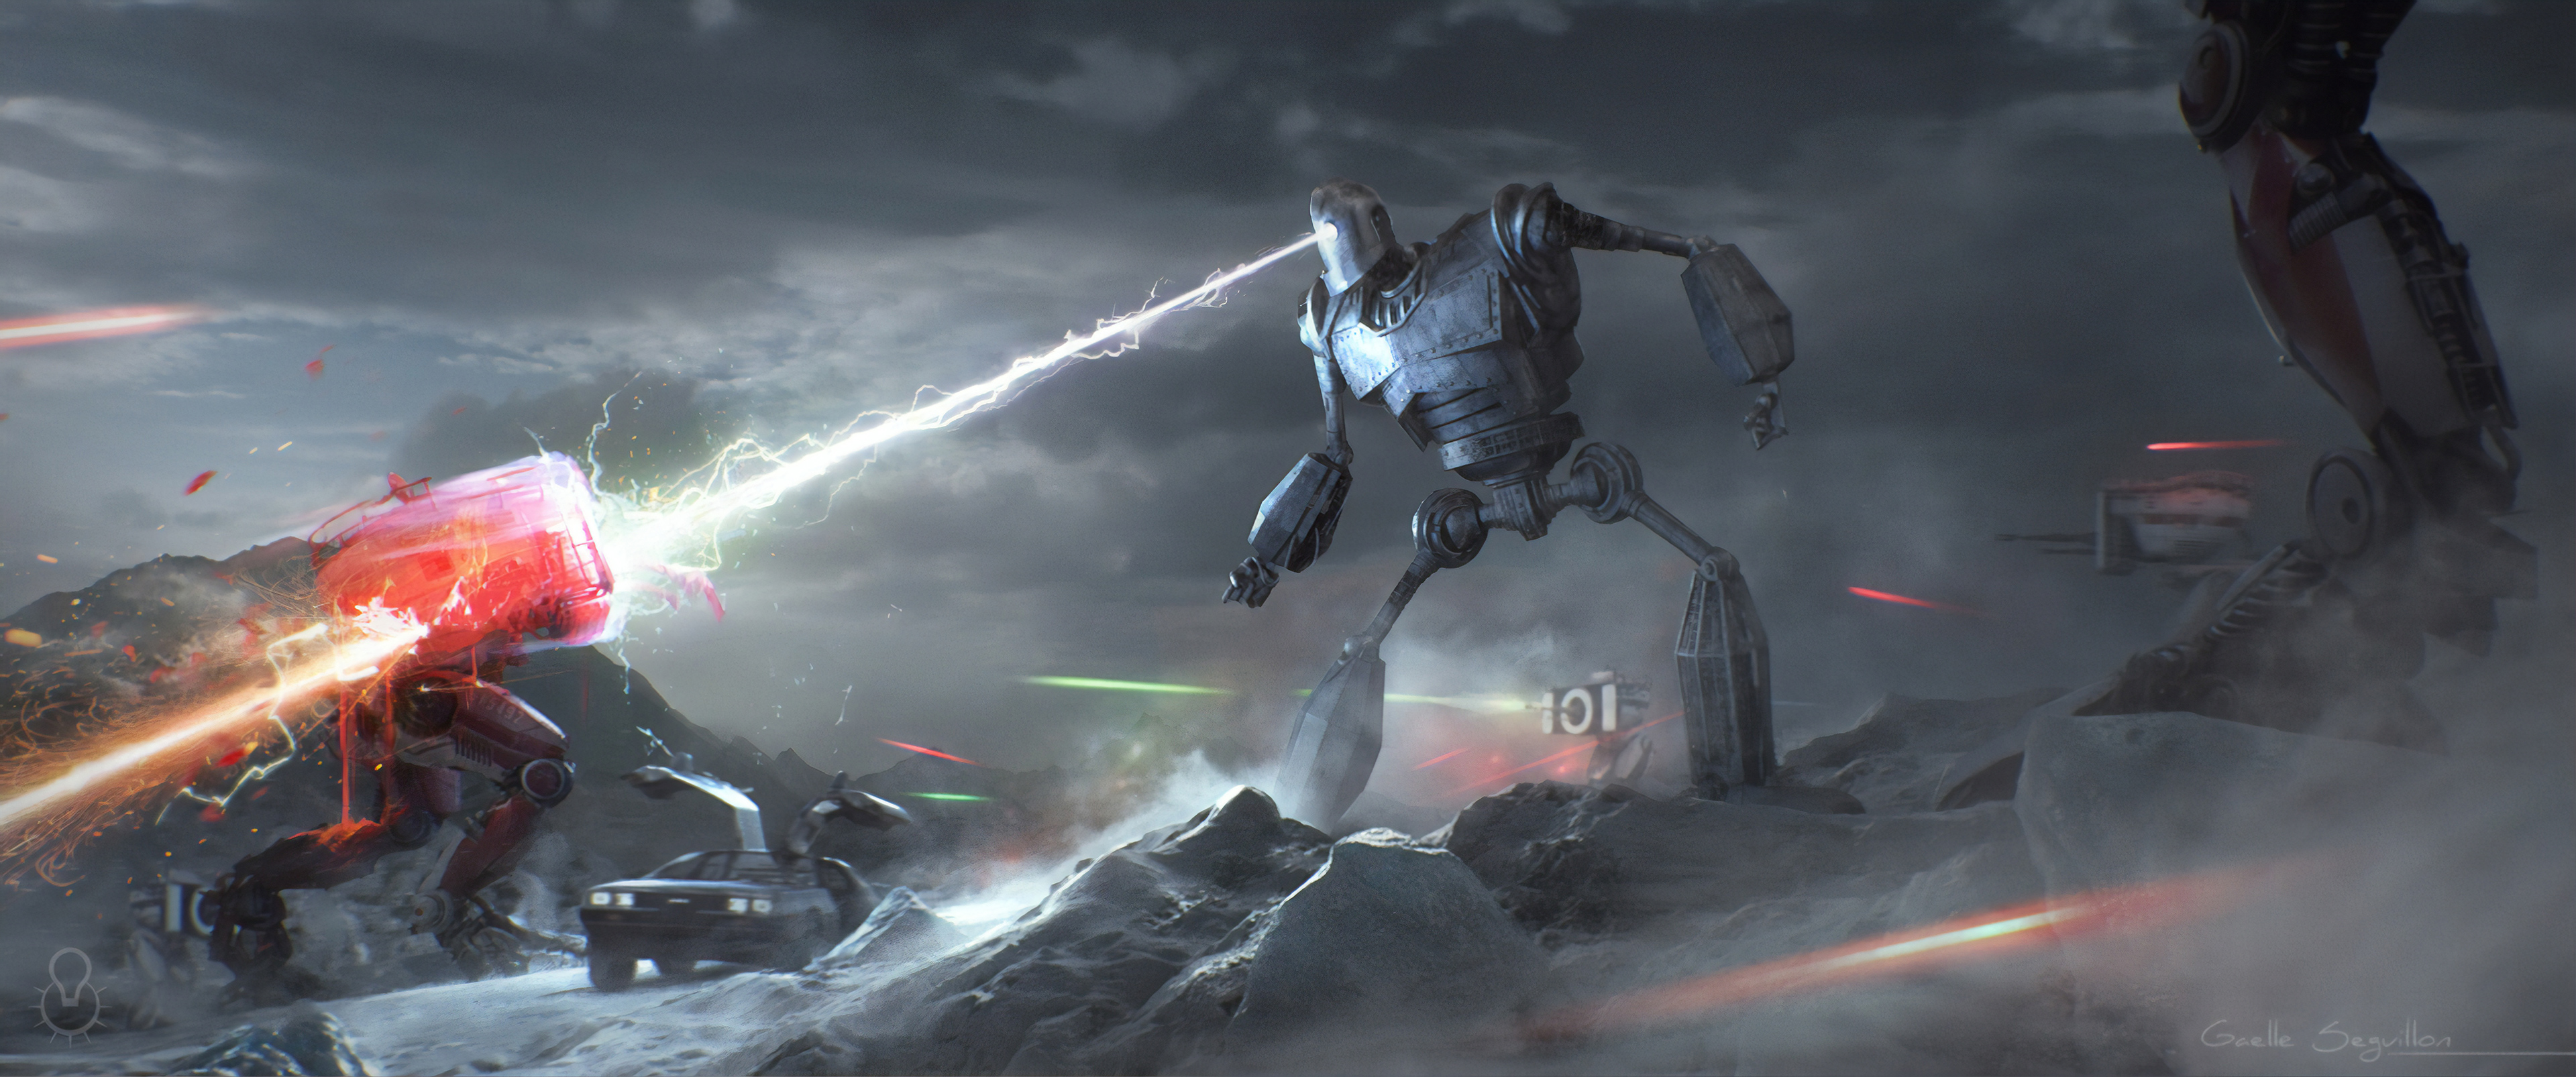 Battle Robot The Iron Giant 3840x1606